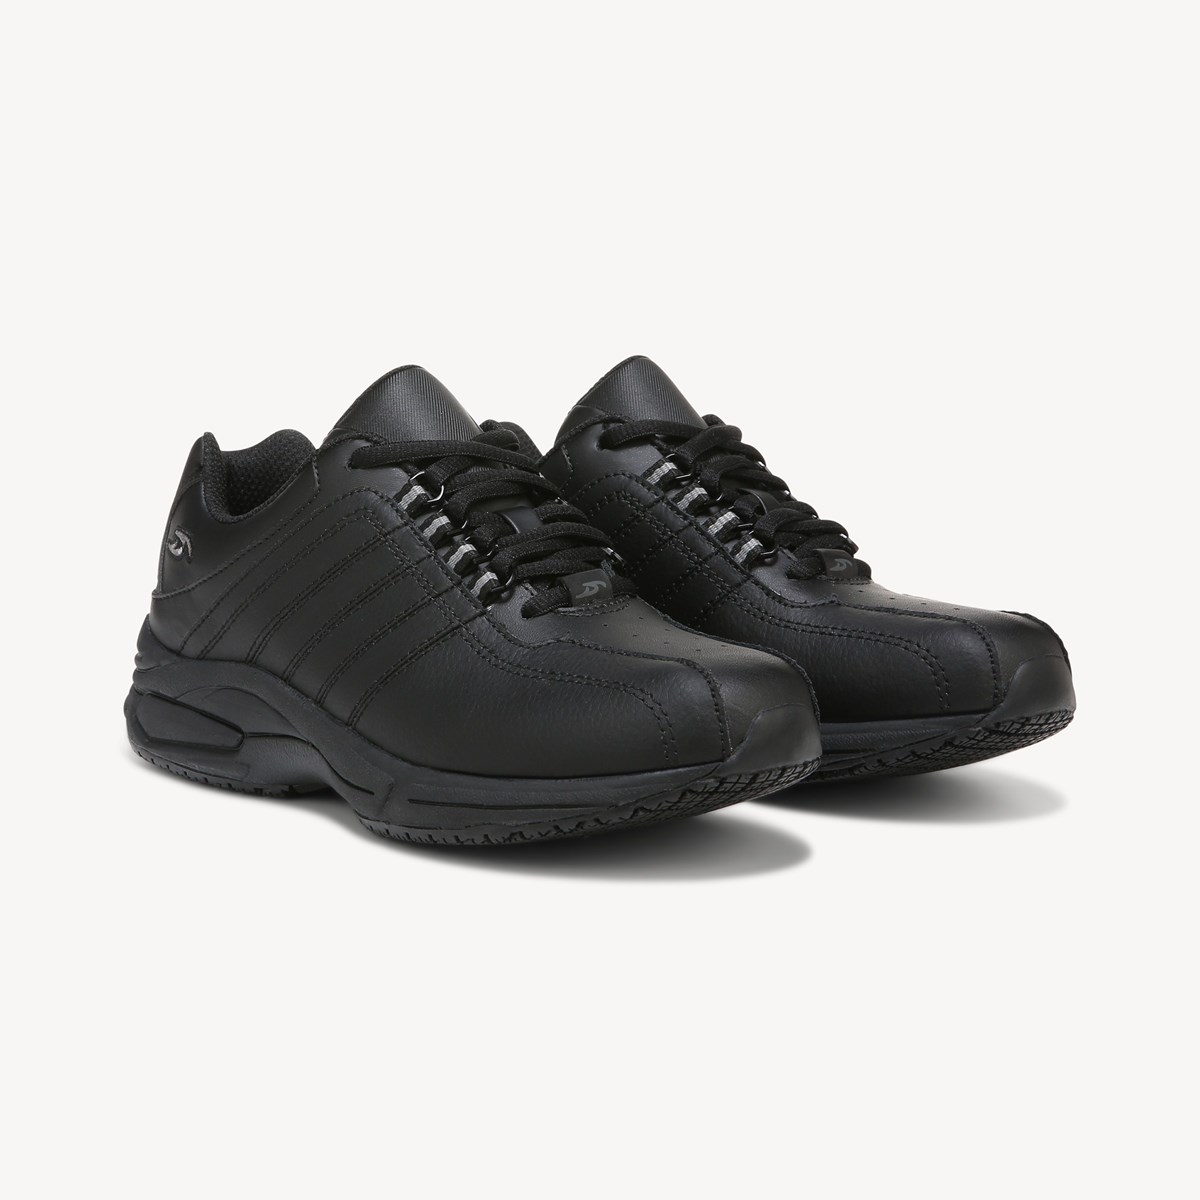 comfortable black slip resistant shoes